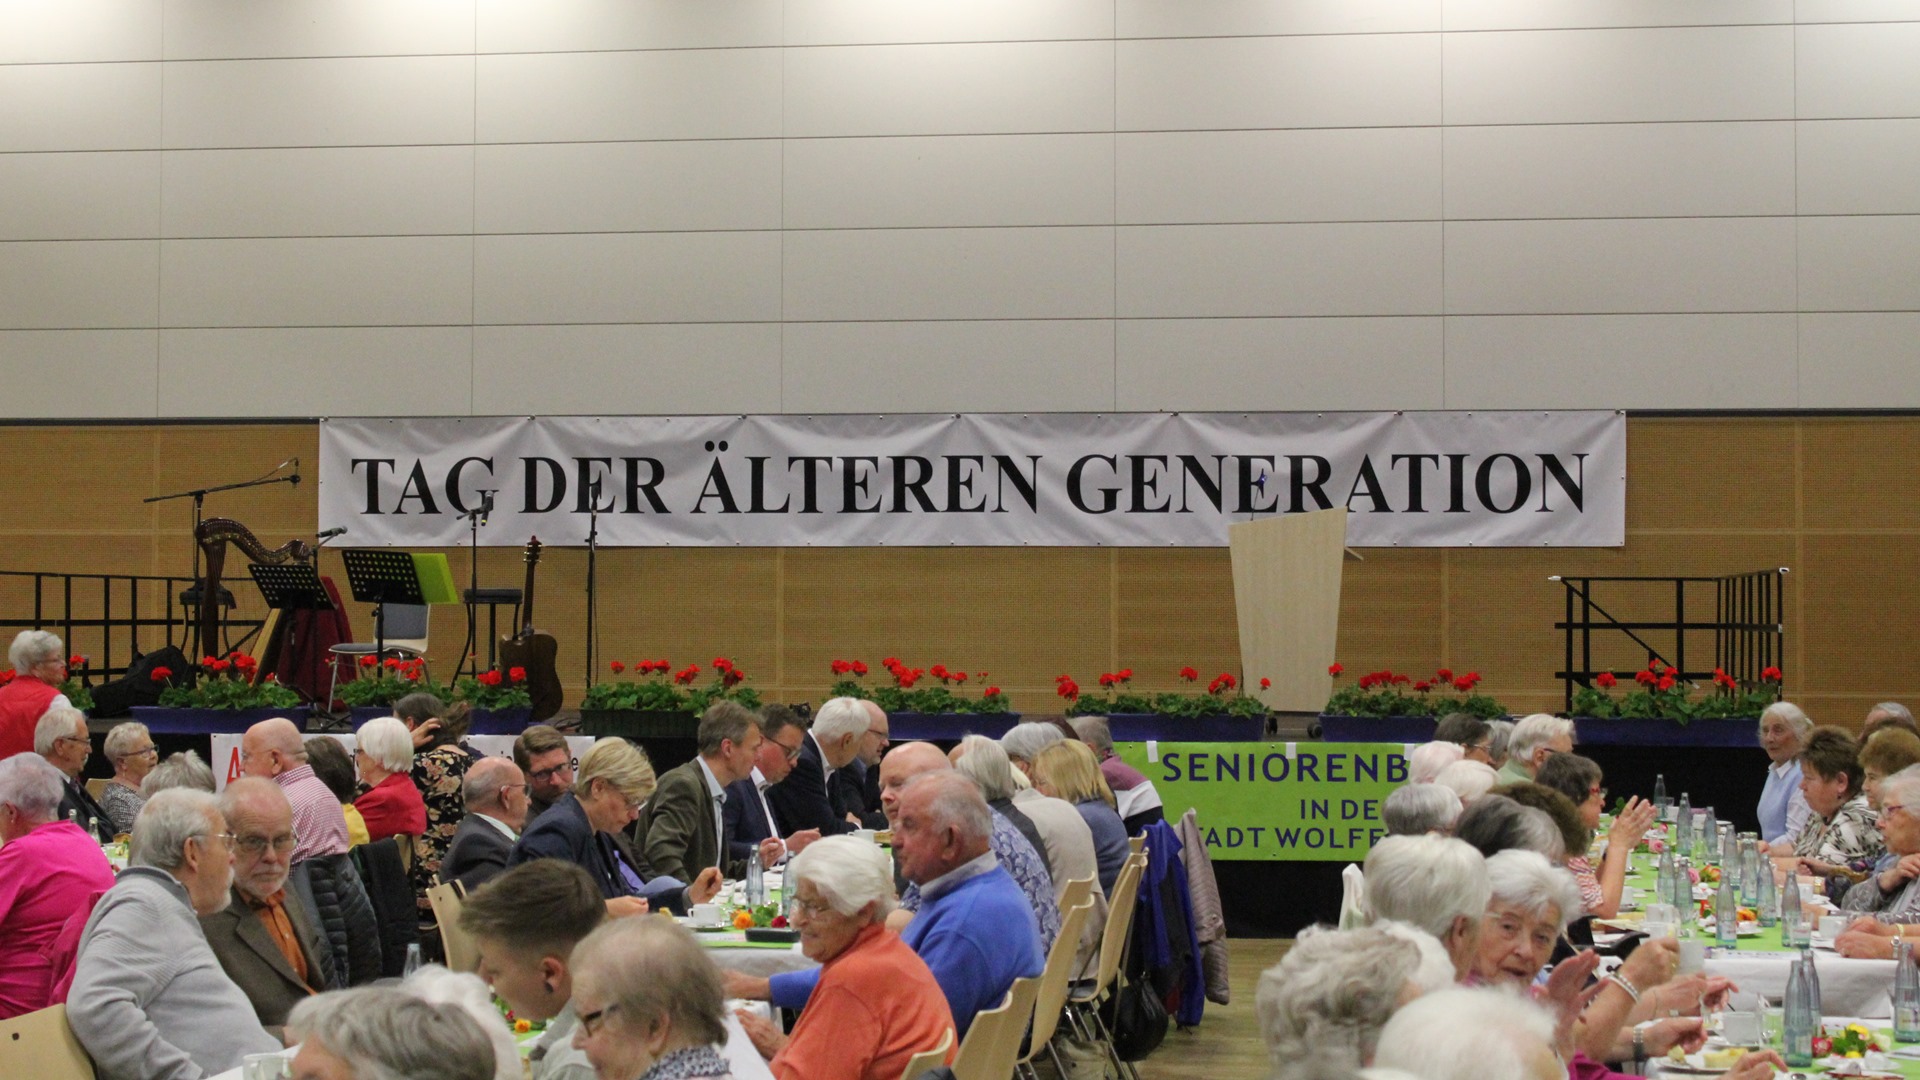 Hinter einer Bühne ist ein Banner mit der Aufschrift "Tag der älteren Generation" angebracht. Auf der Bühne steht ein Rednerpult, Mikrofonständer, eine Harfe und eine Gitarre. Vor der Bühne sitzen an langen Gruppentischen zumeist ältere Menschen, die sich unterhalten.